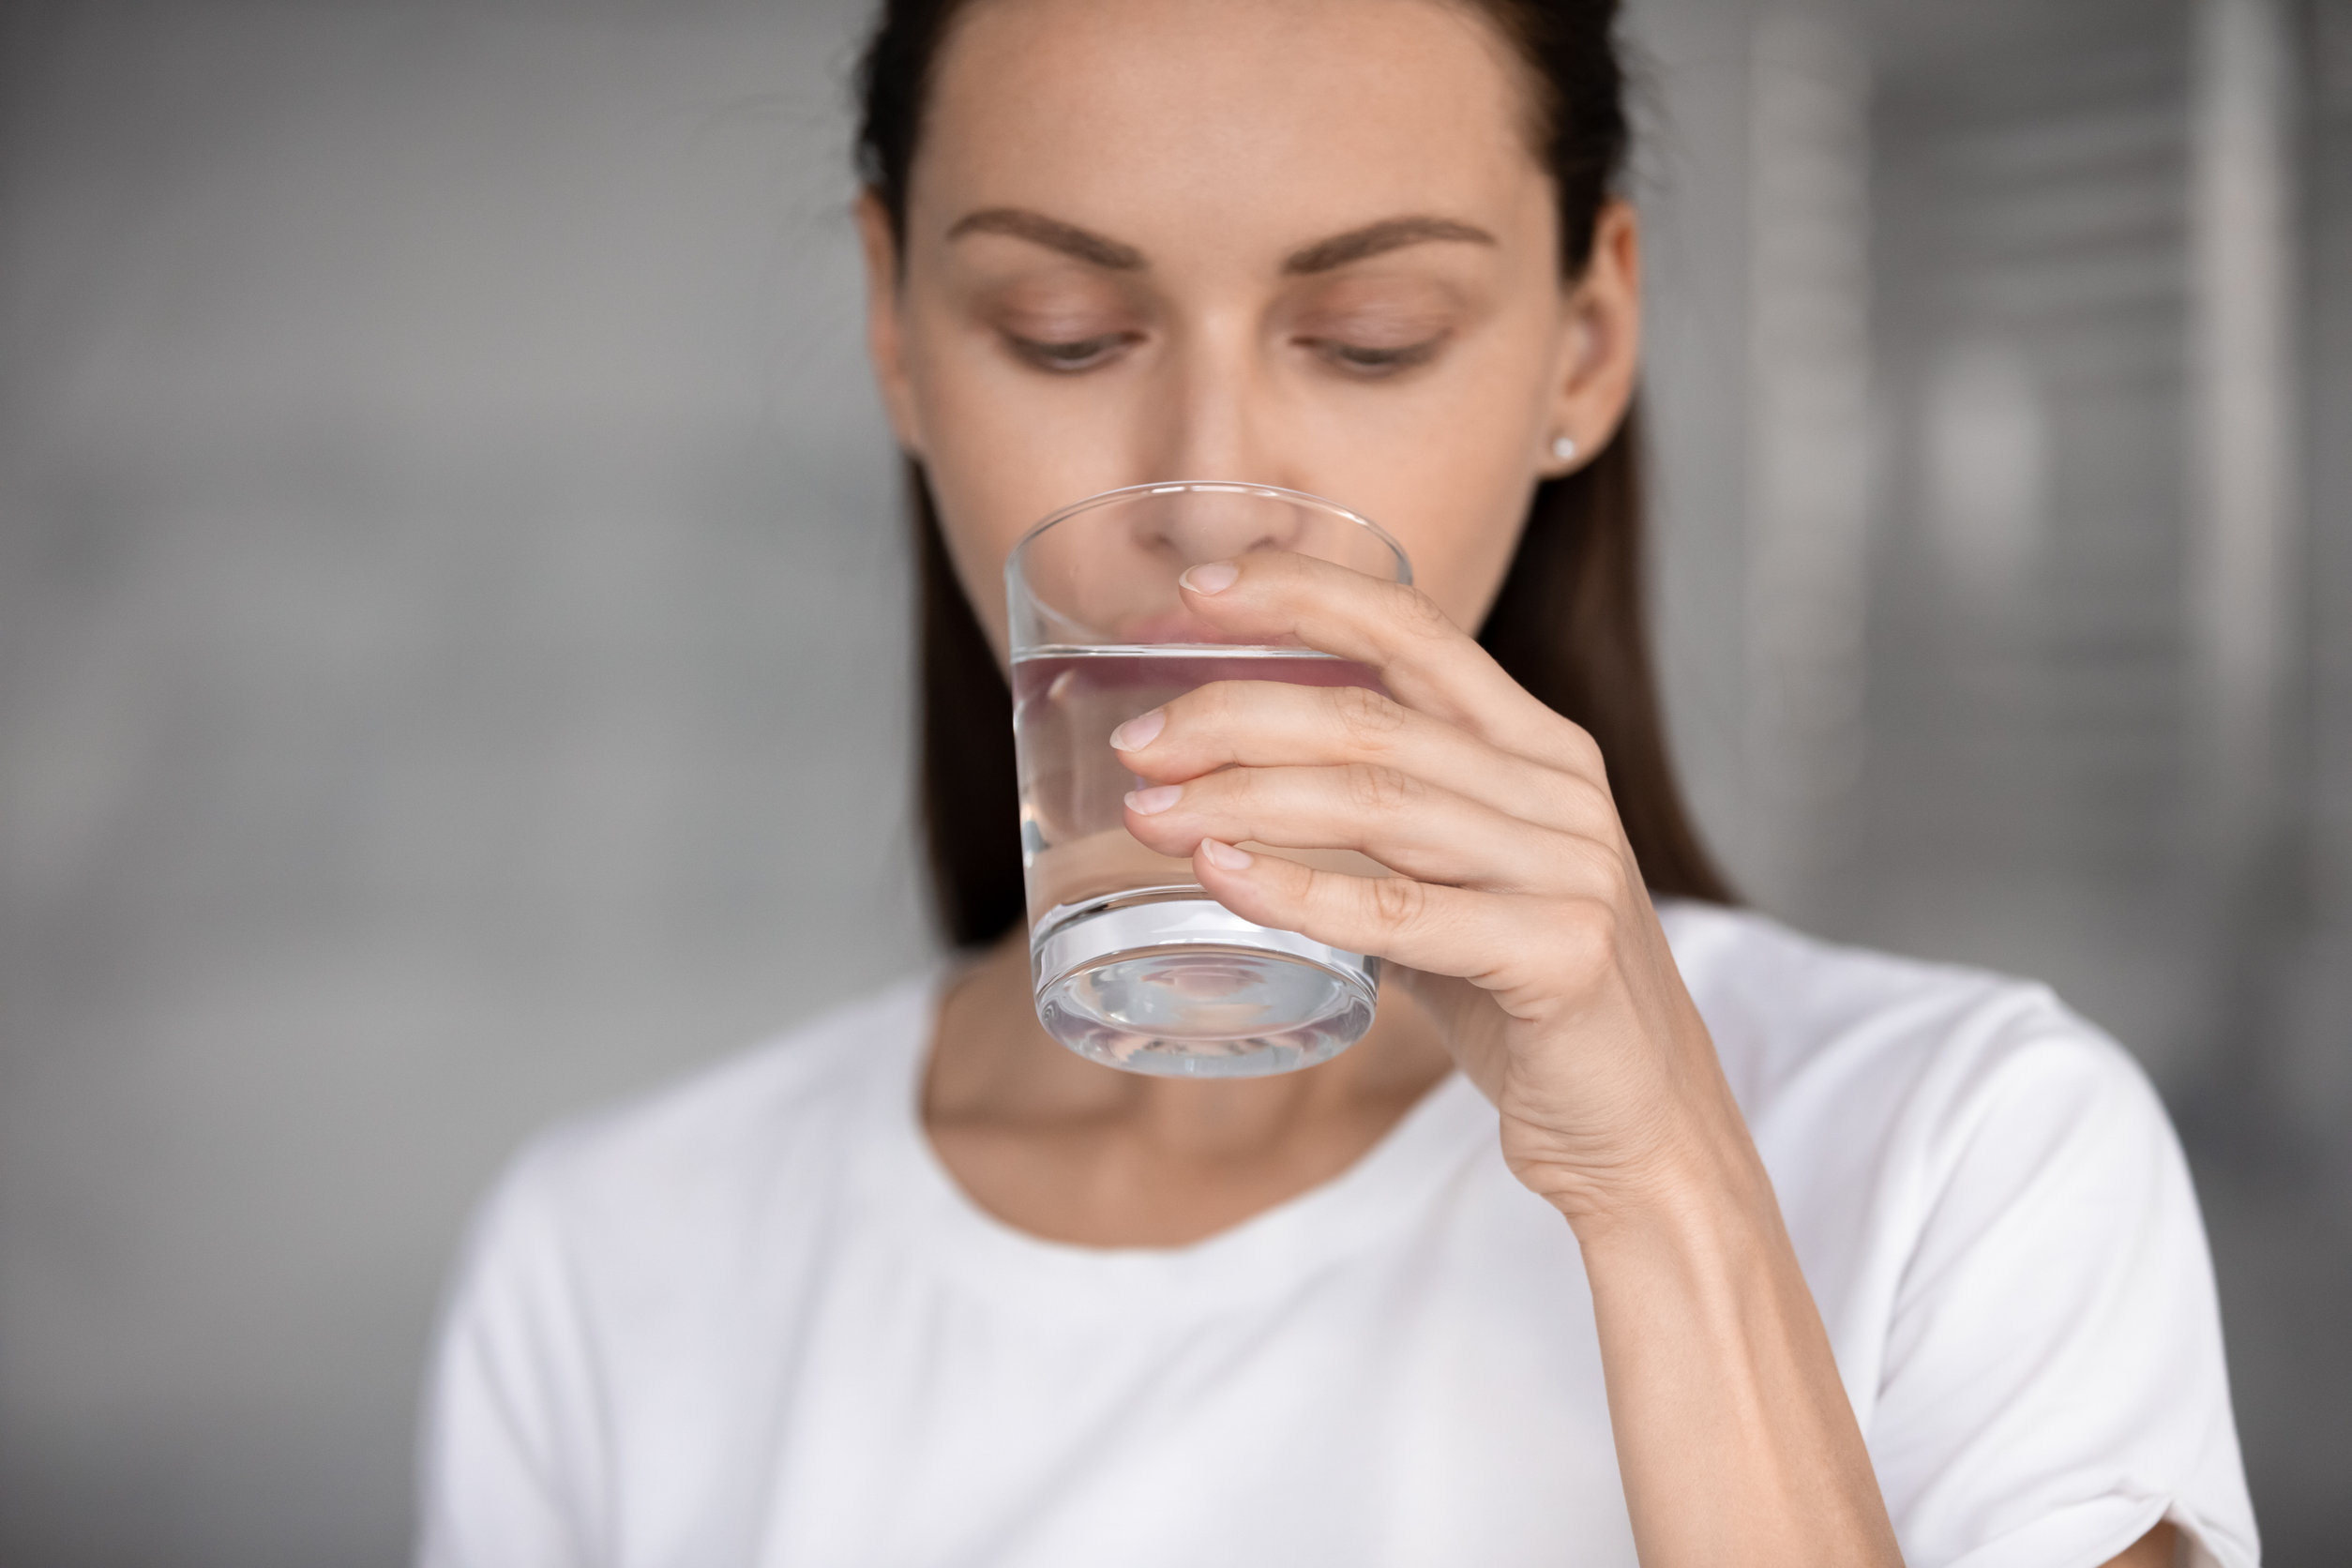 Testünk egyes részeire kiemelten pozitív hatású az ivóvíz!